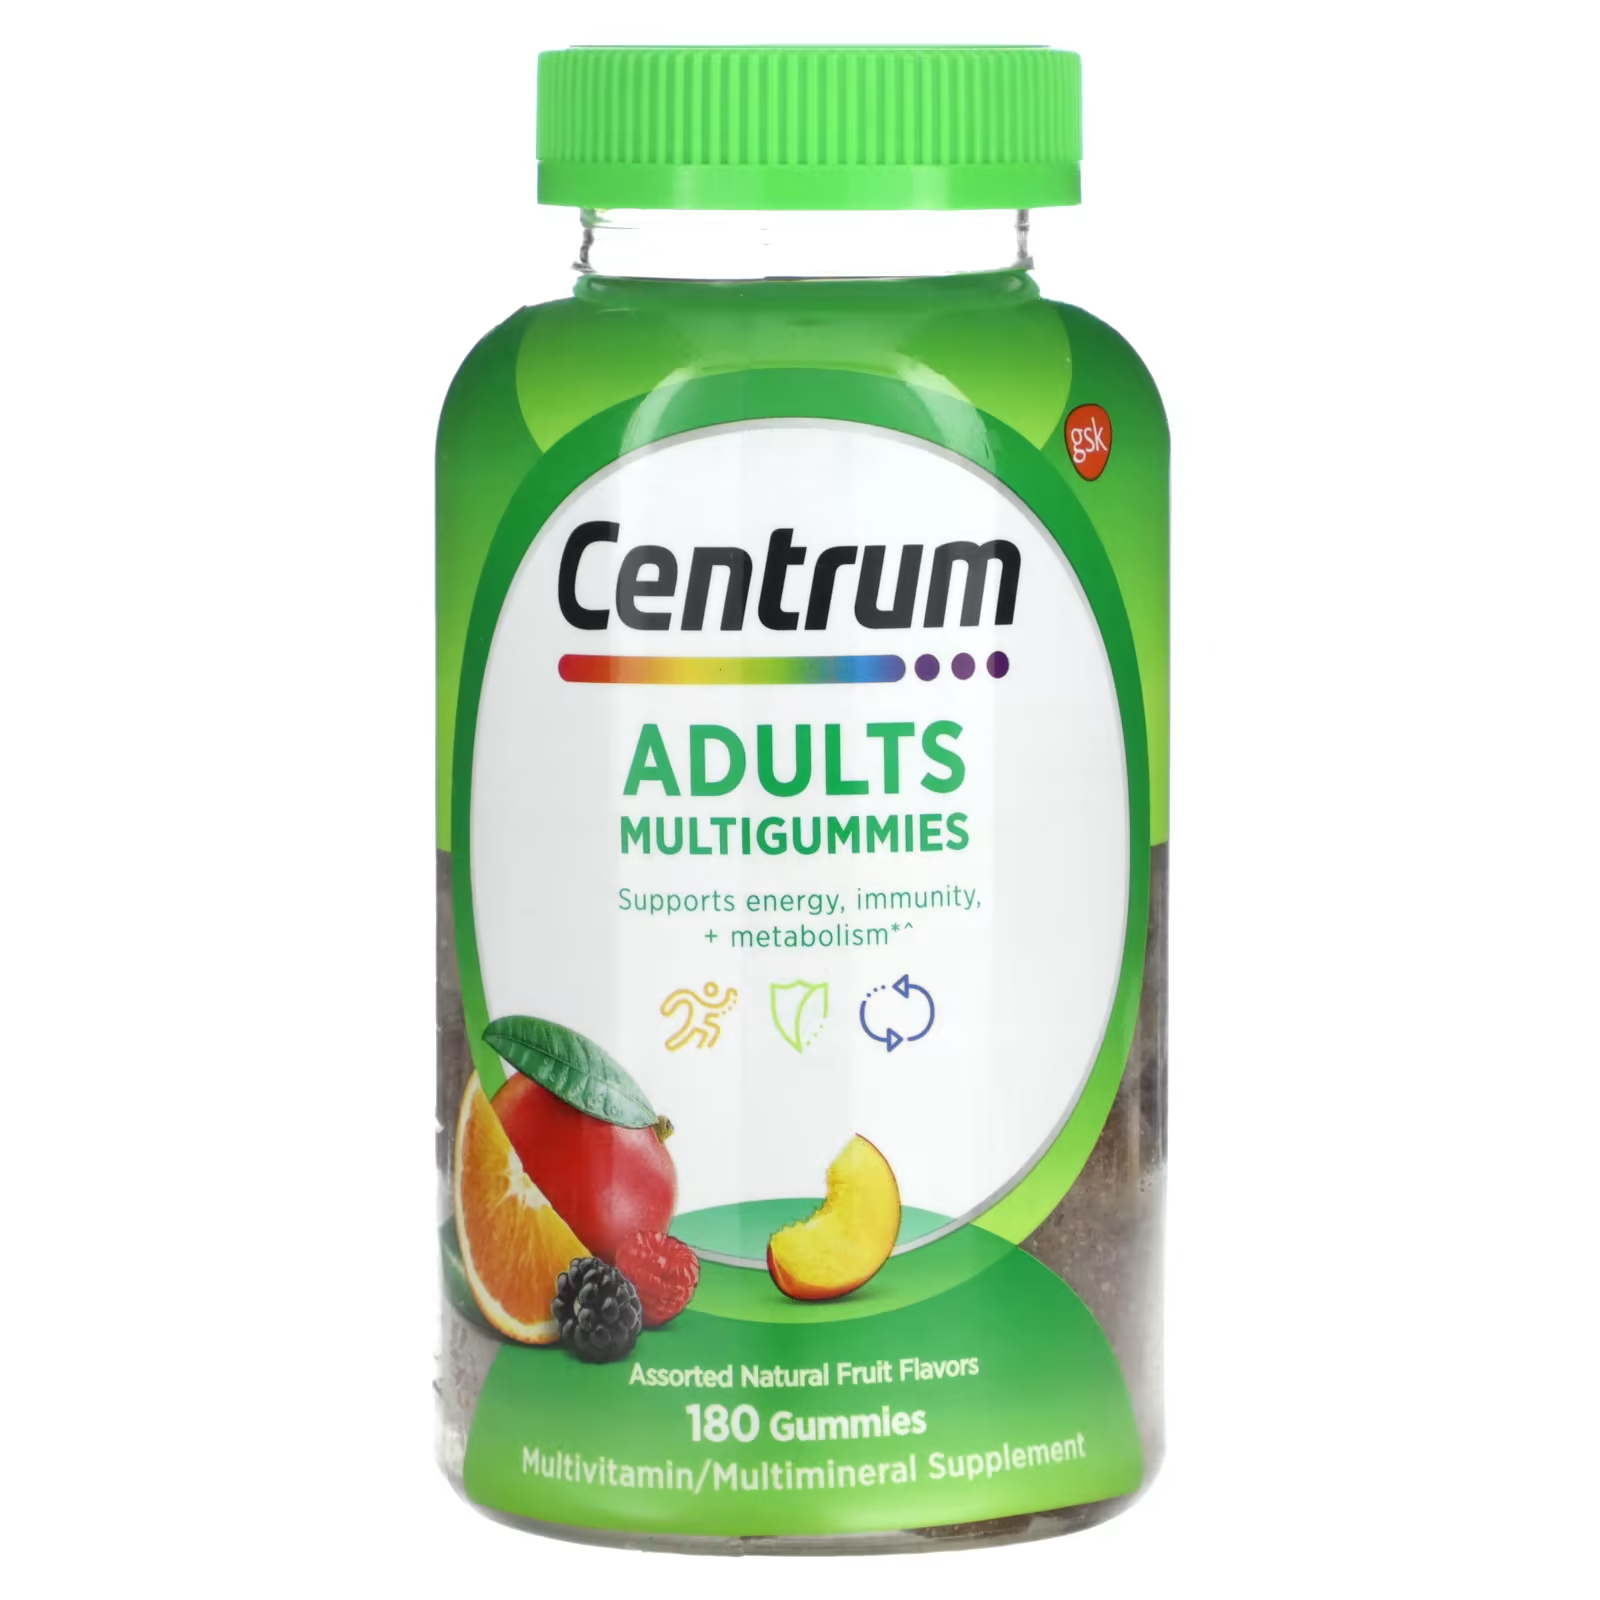 Мультивитаминная добавка Centrum Adults Multigummies ассорти из натуральных фруктов, 180 жевательных конфет мультивитамины centrum multigummies adults 50 120 жевательных конфет